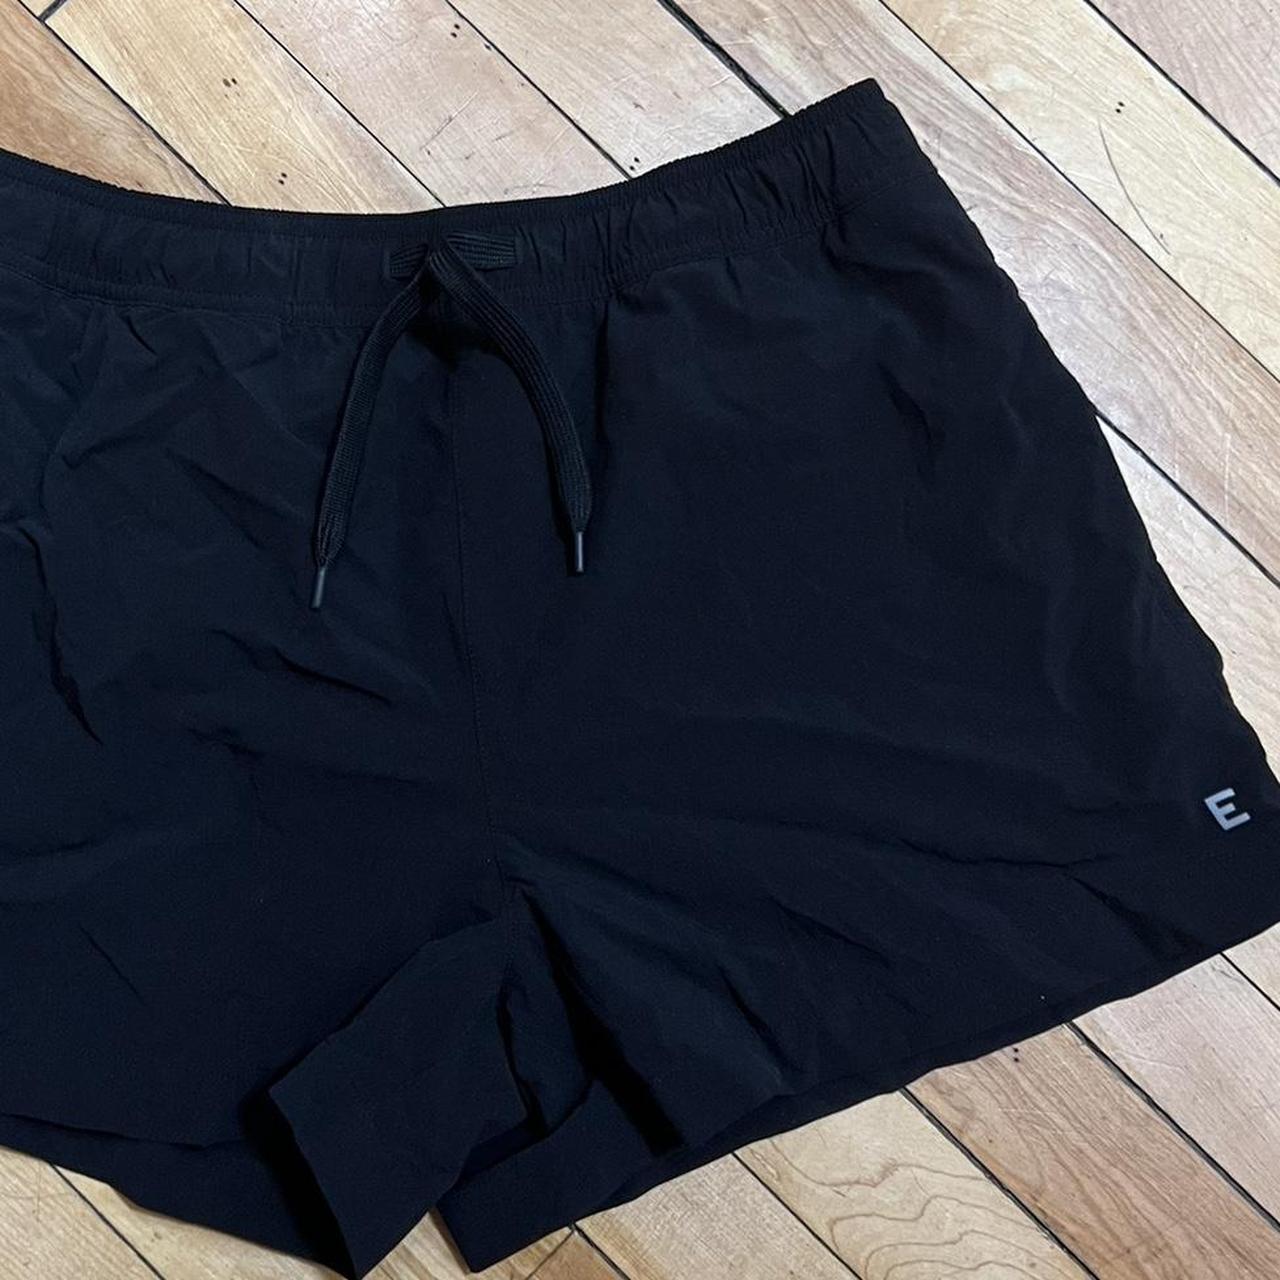 Black nylon-shorts - Depop